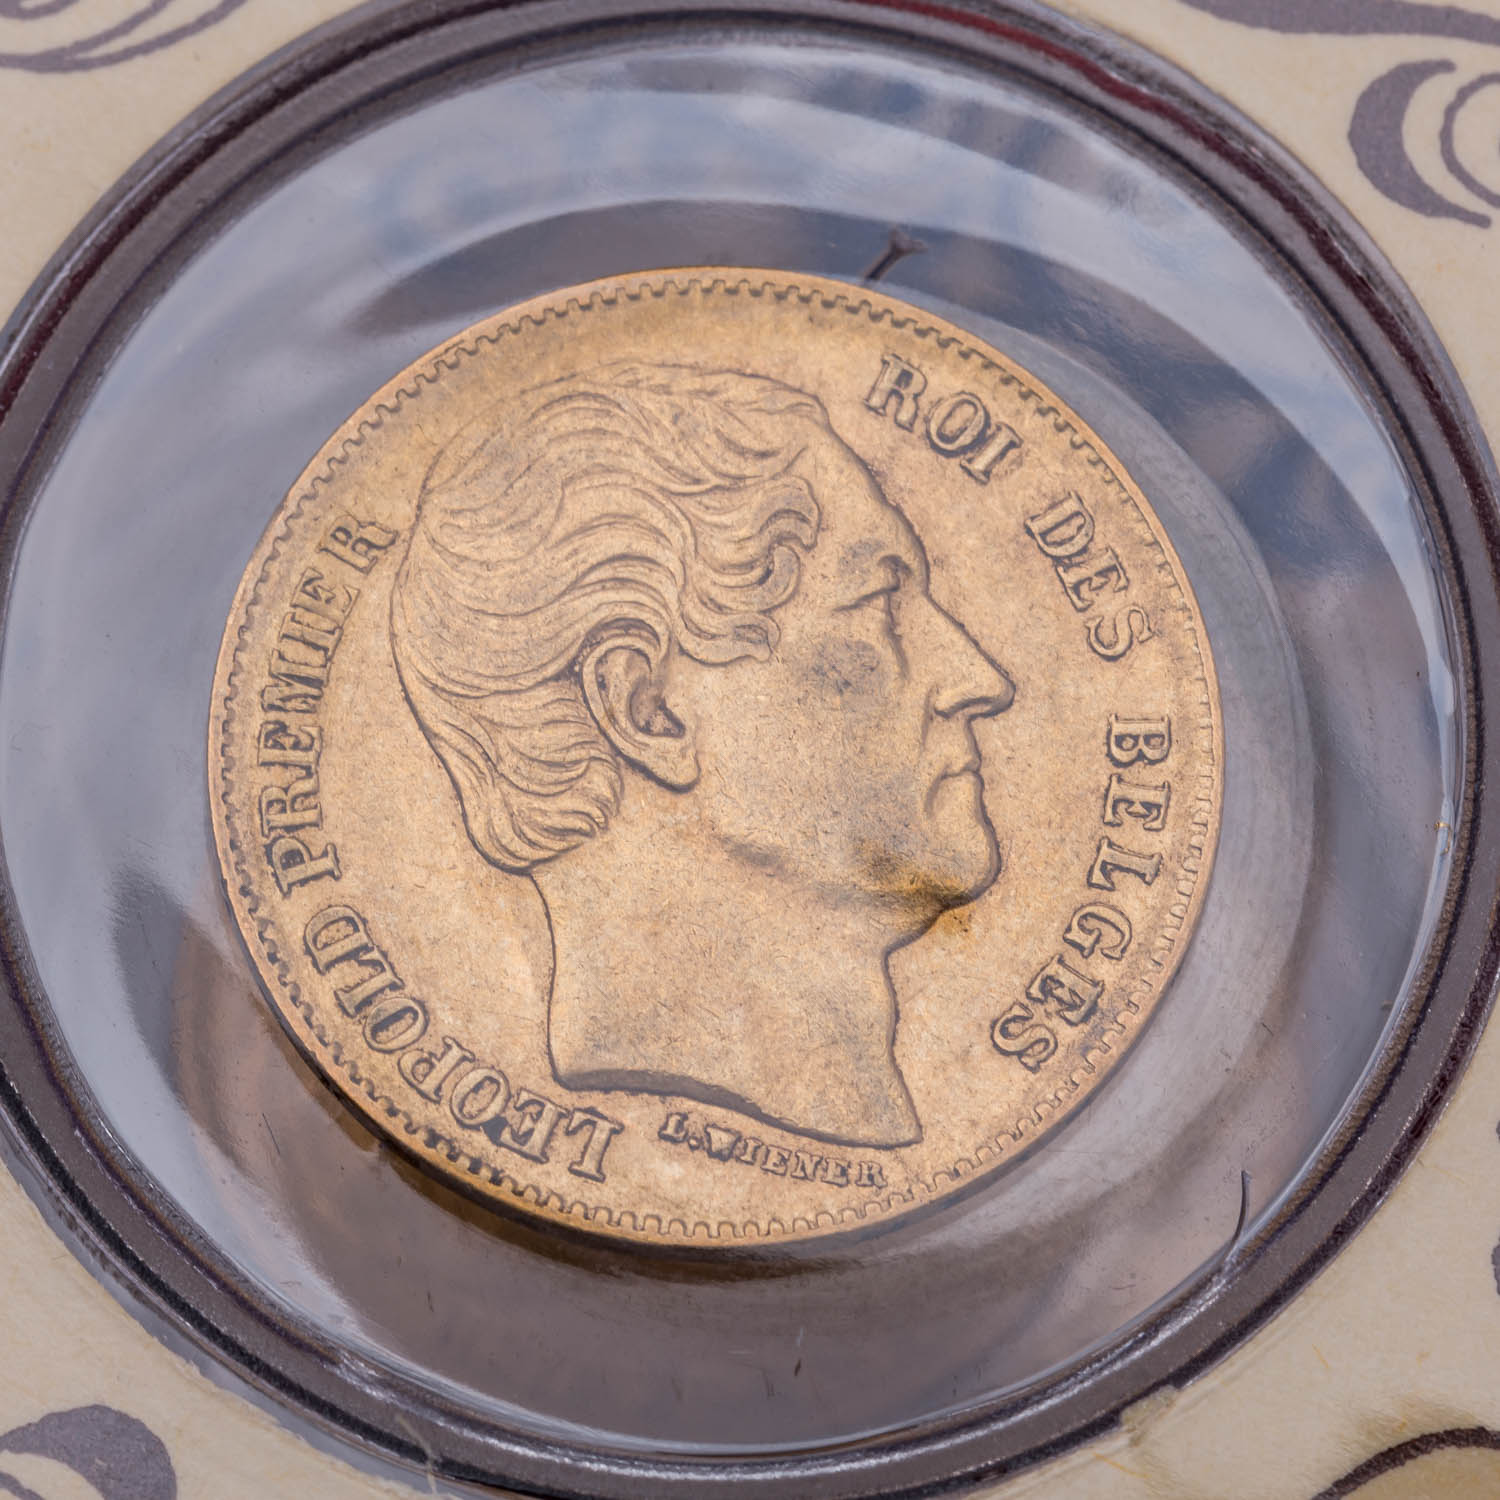 GOLD - Goldmünzen aus Europa und Nordamerika in 3 Alben. 49 Stück. - Bild 7 aus 9